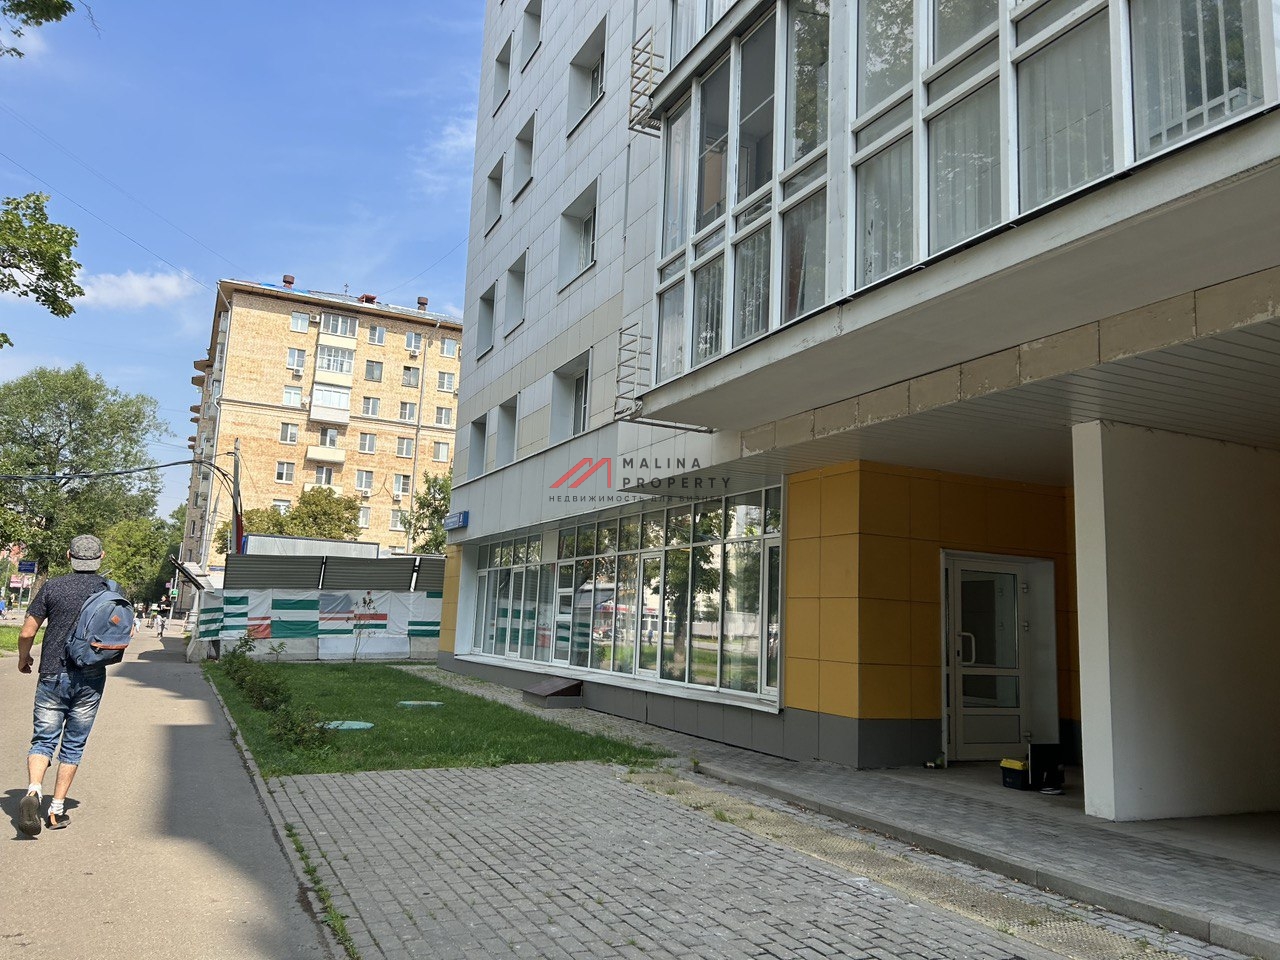 Аренда помещения в новом доме на Тимирязевской улице